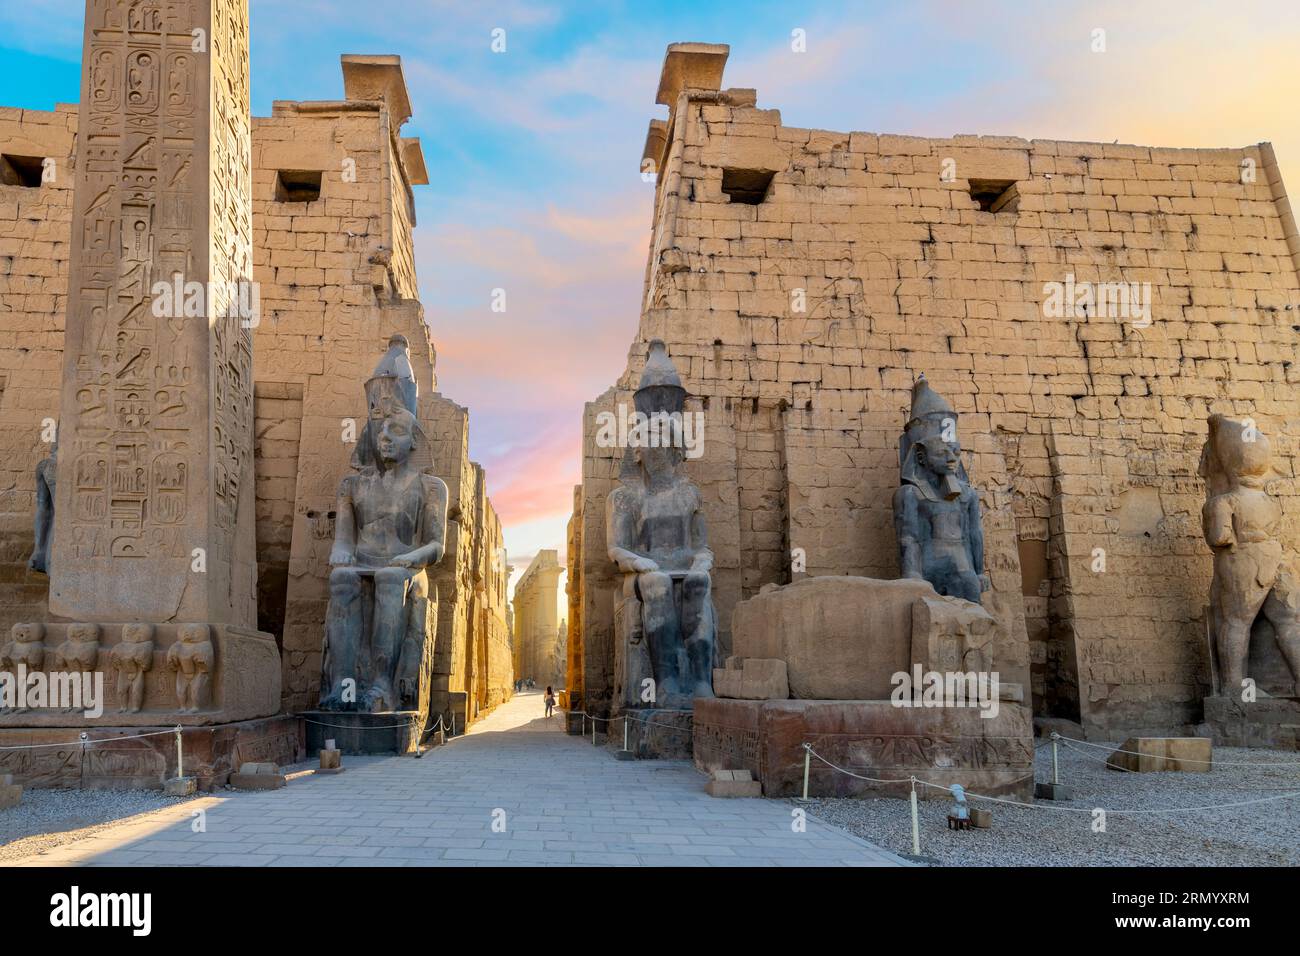 Ingresso all'antico tempio egizio di Luxor con statue di Ramses II e l'obelisco del pilone mentre il sole si trasforma nei colori vicino al tramonto a Luxor, in Egitto. Foto Stock